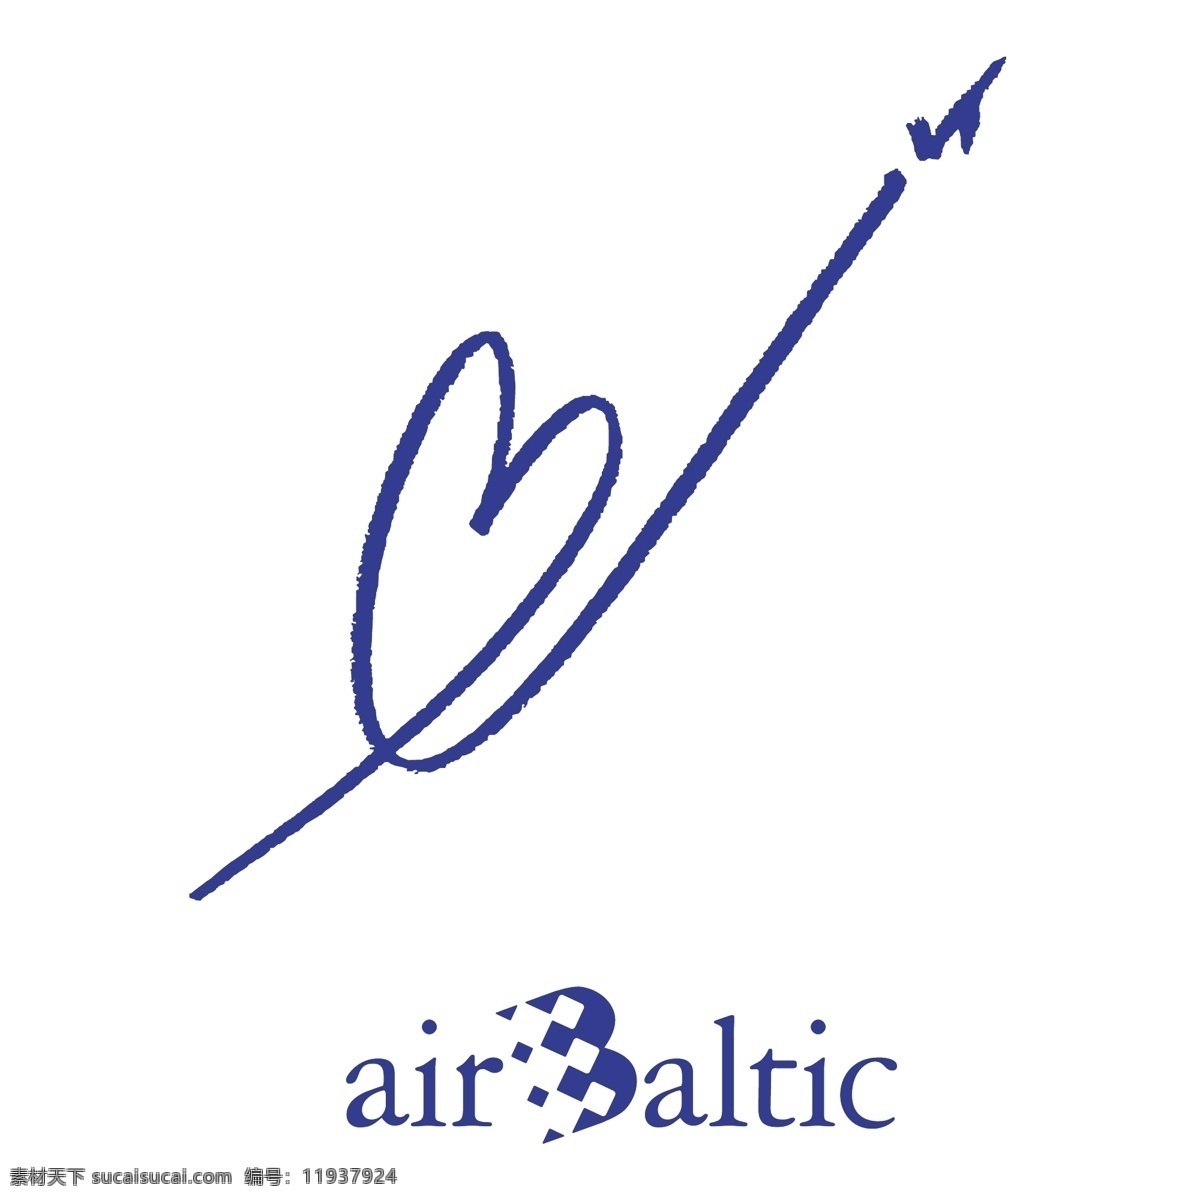 波罗的海 航空 自由 空气 标识 标志 psd源文件 logo设计